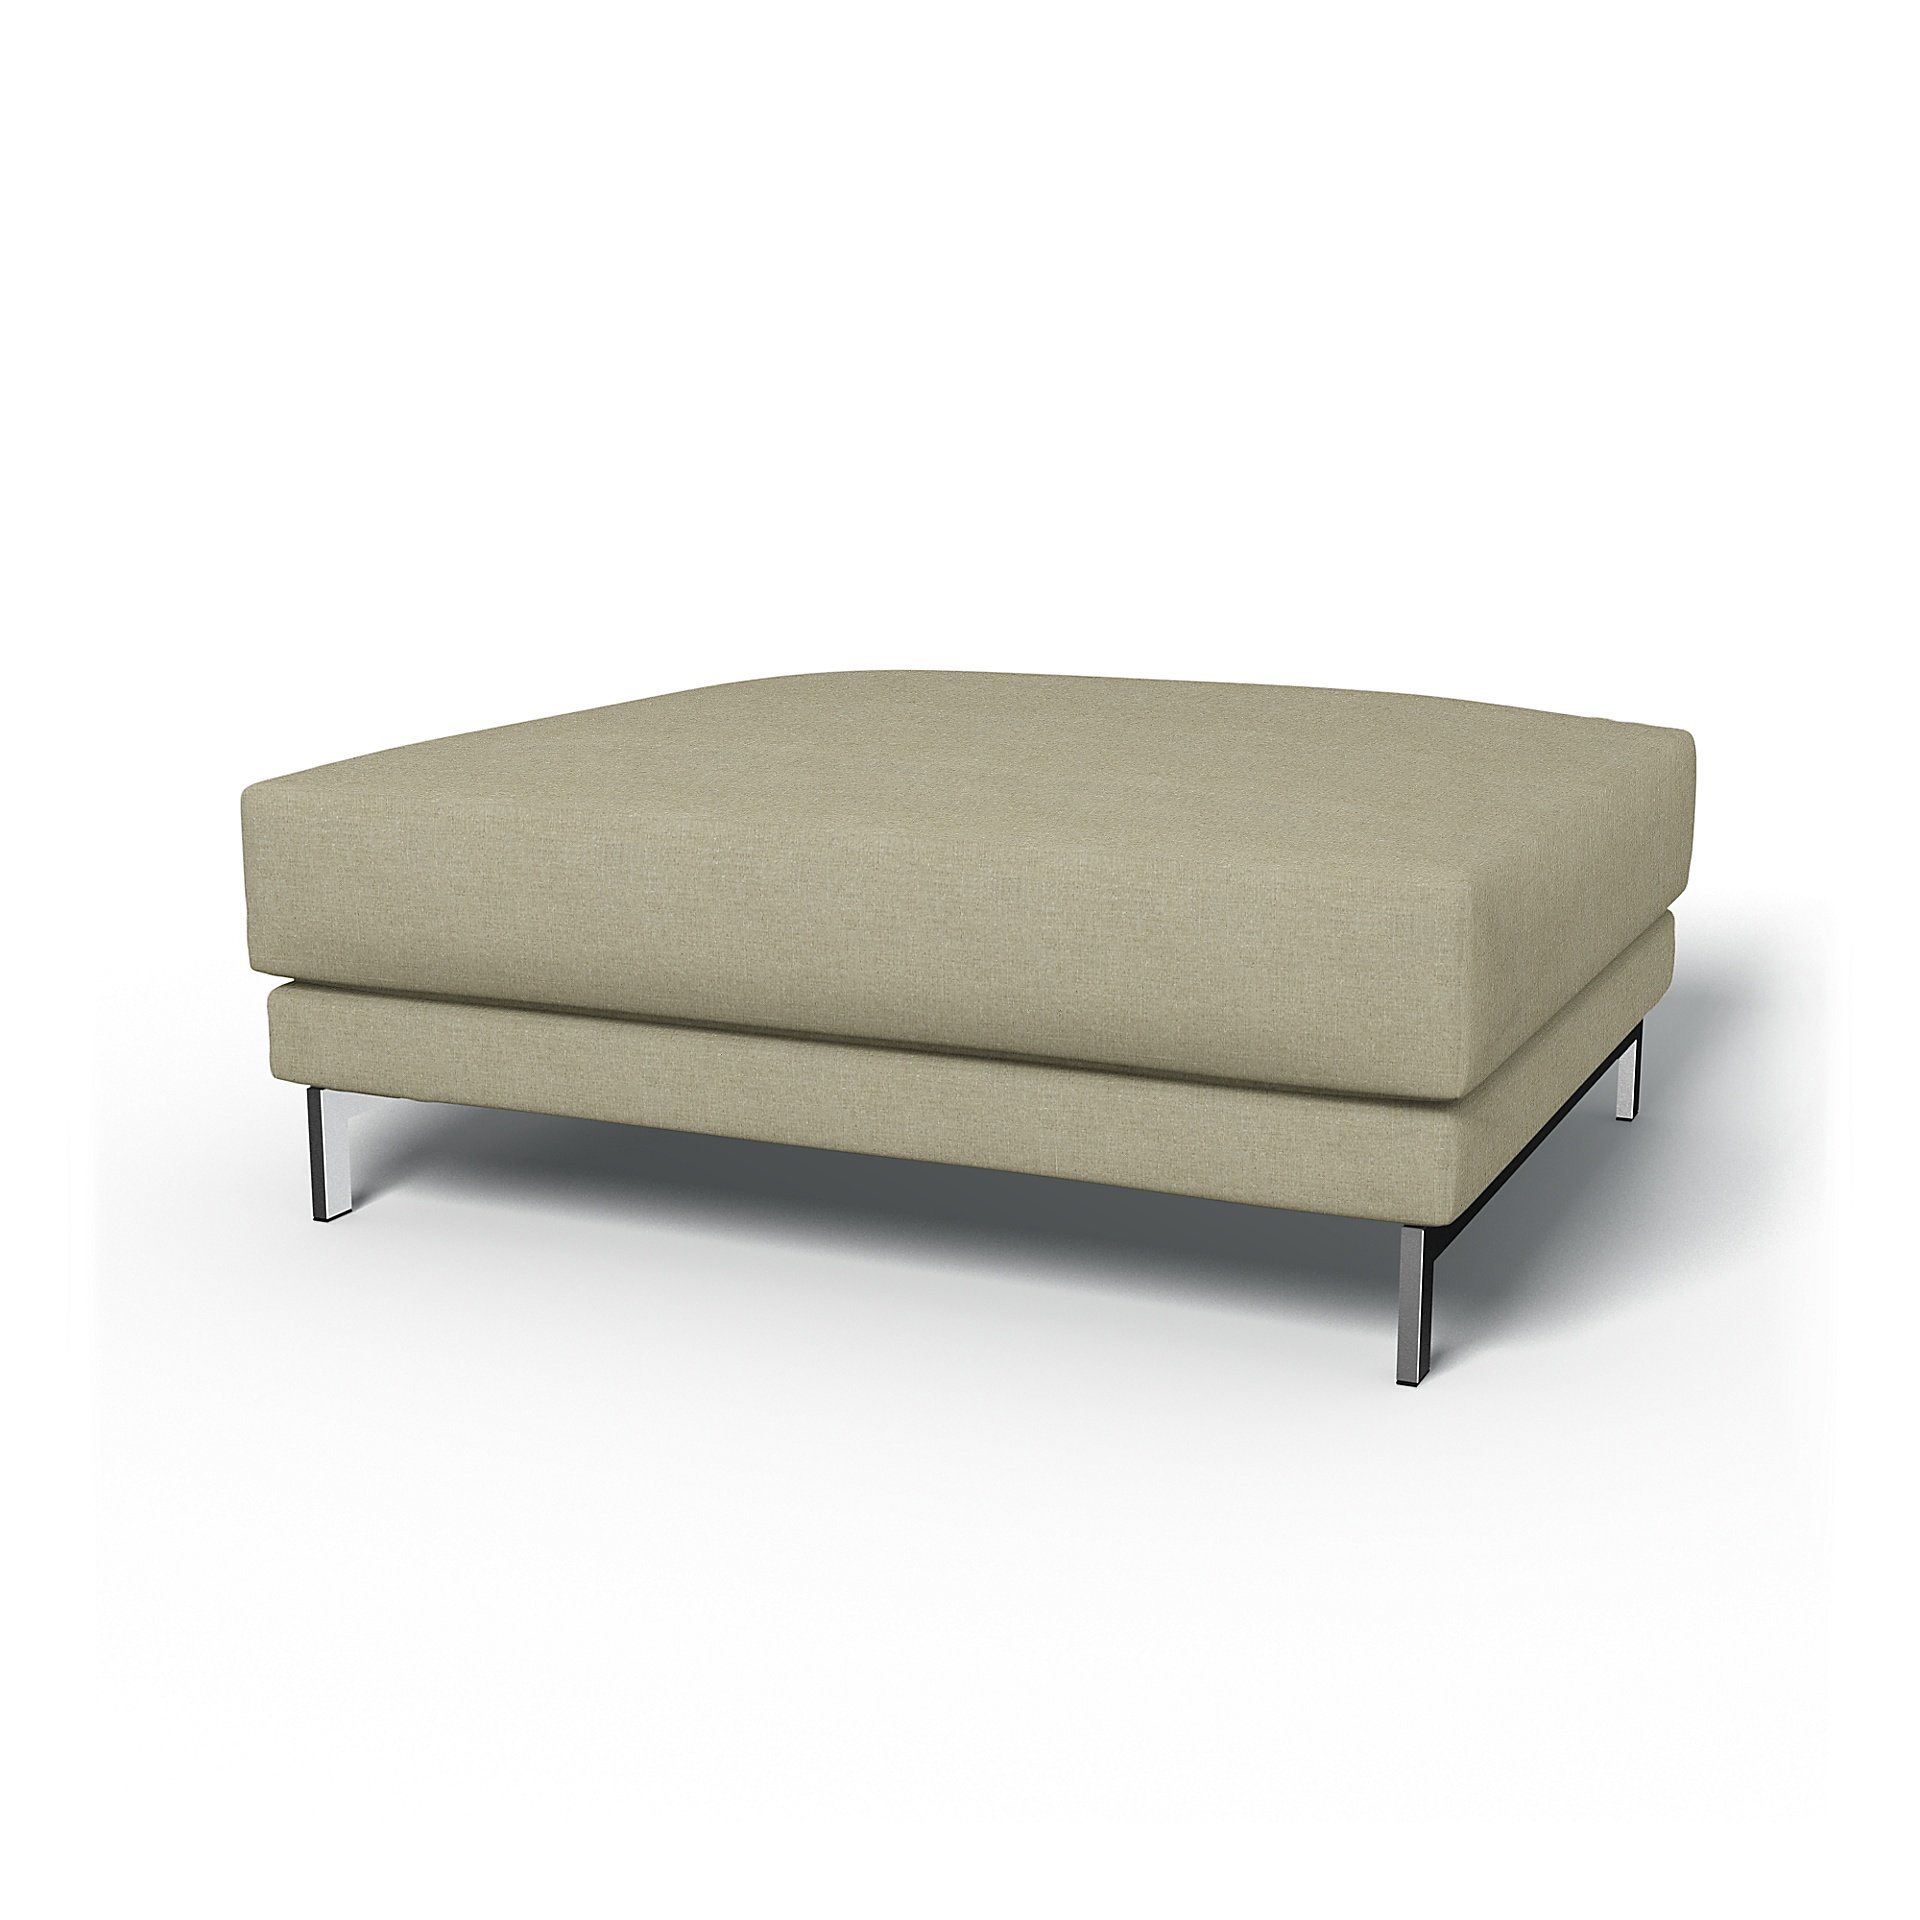 IKEA - Nockeby Footstool Cover, Pebble, Linen - Bemz